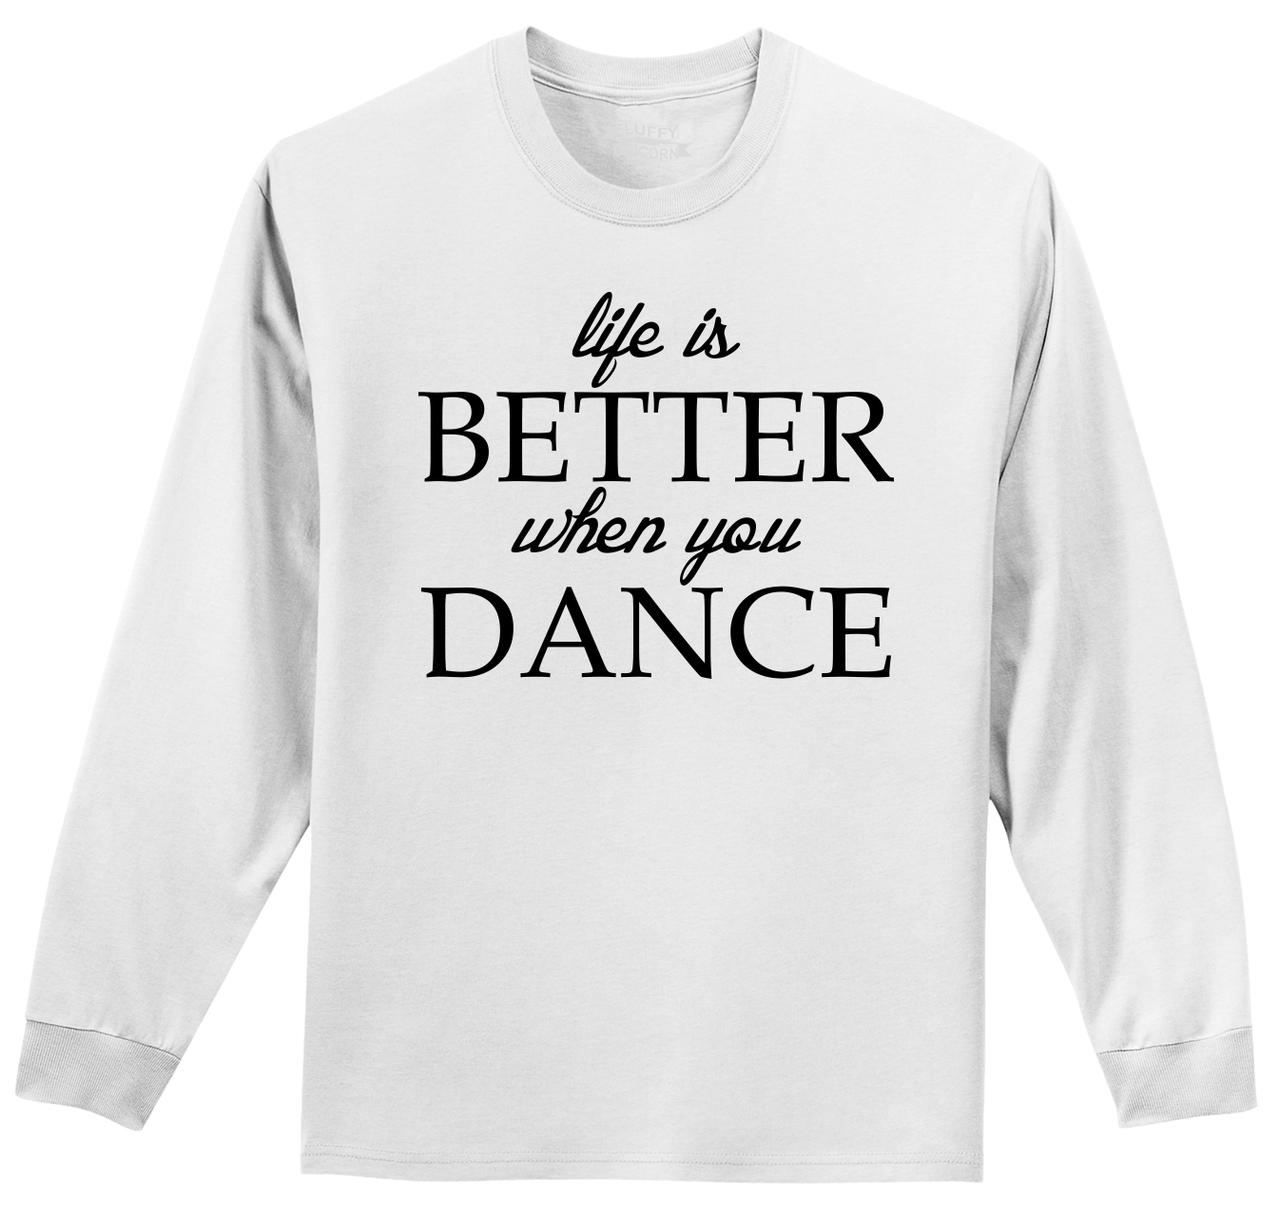 Dance T-Shirt Dance Shirt Positive Tee Dancer Shirt Hippie Positive Tees Inspirational Boho Tees Dancer T-Shirt Yoga Dance Tee